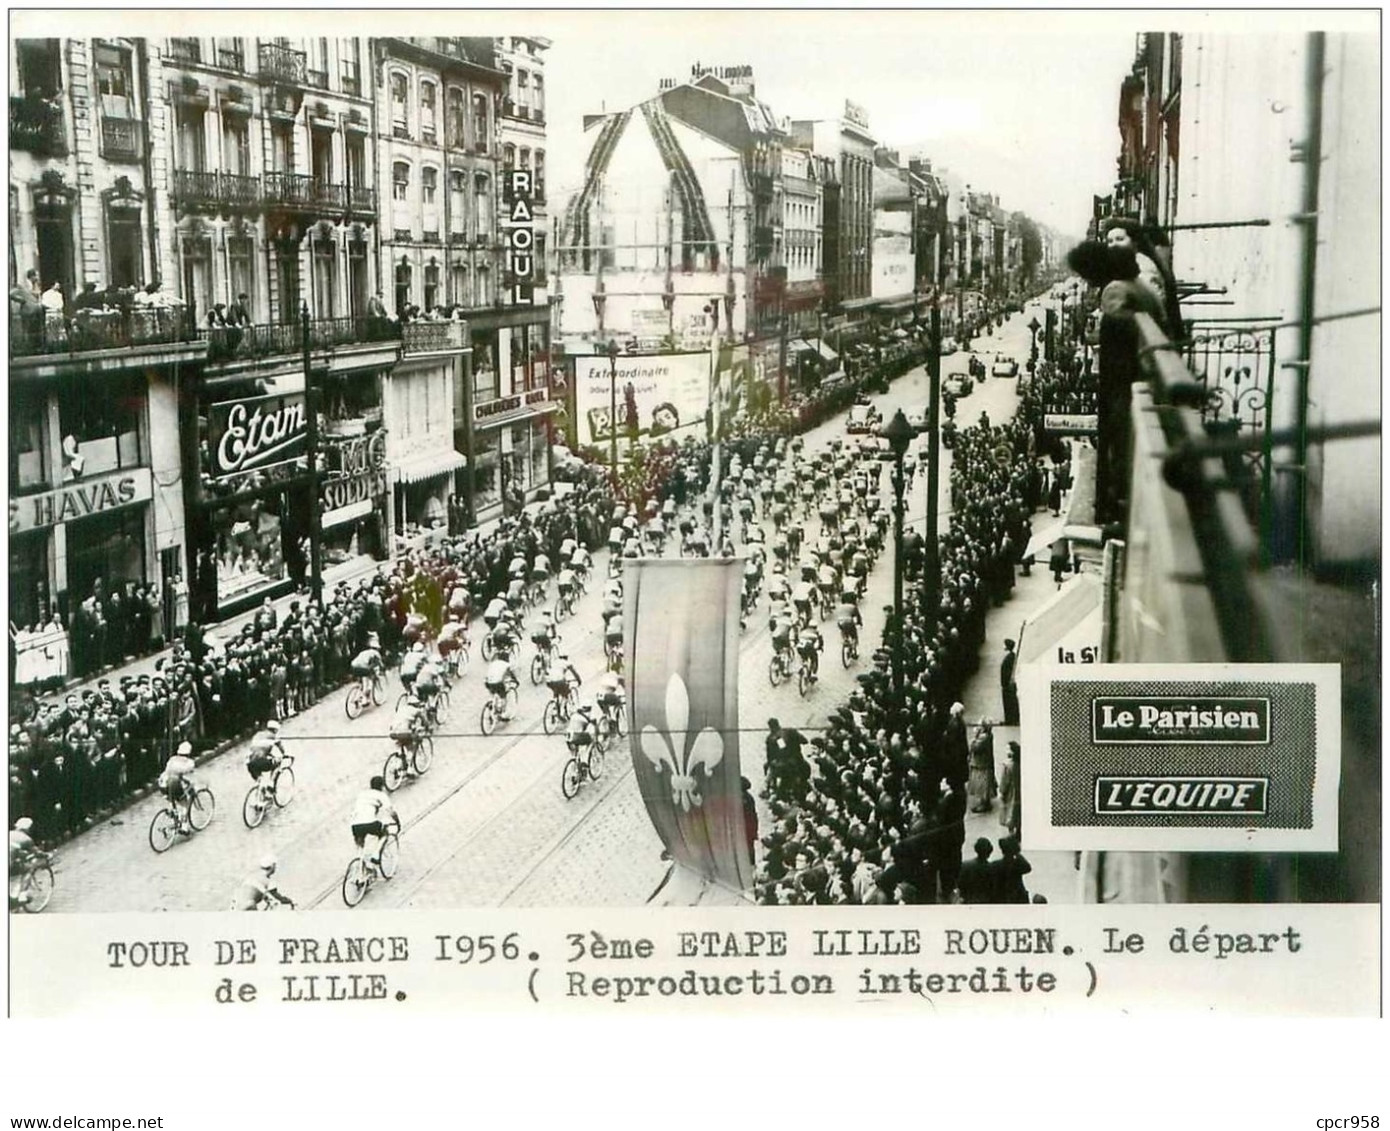 PHOTO DE PRESSE ORIGINALE TOUR DE FRANCE 1956.20X15.3eme ETAPE LILLE ROUEN.LE DEPART DE LILLE.n°18658 - Cyclisme